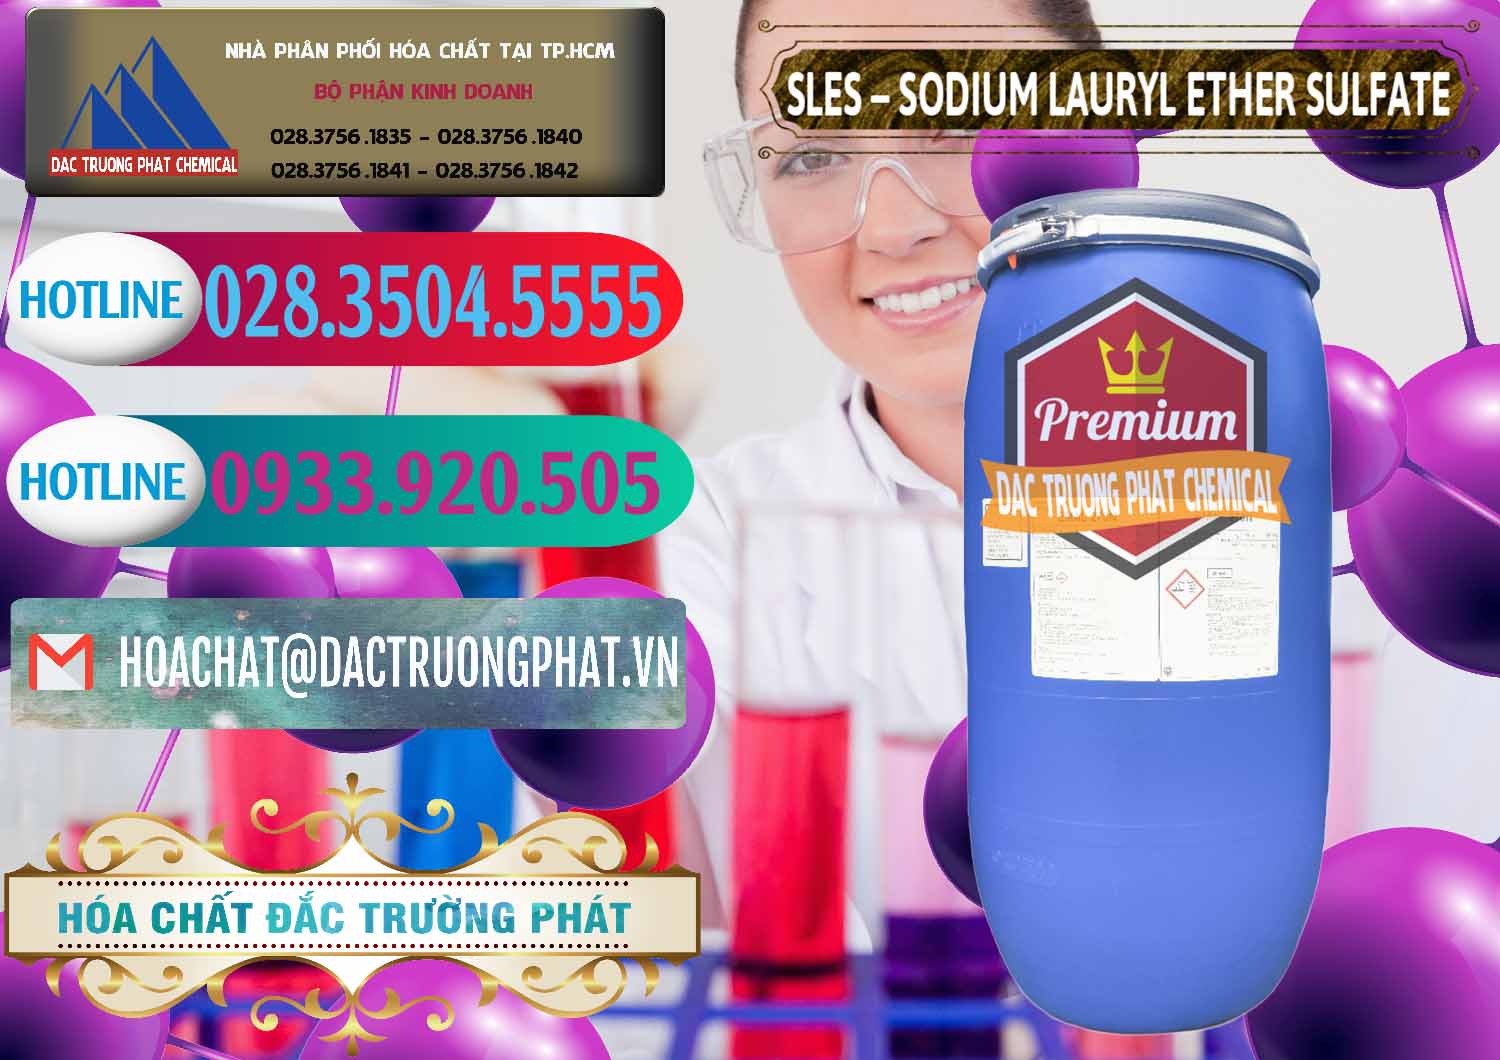 Đơn vị bán _ phân phối Chất Tạo Bọt Sles - Sodium Lauryl Ether Sulphate Kao Indonesia - 0046 - Cty chuyên cung cấp _ nhập khẩu hóa chất tại TP.HCM - truongphat.vn